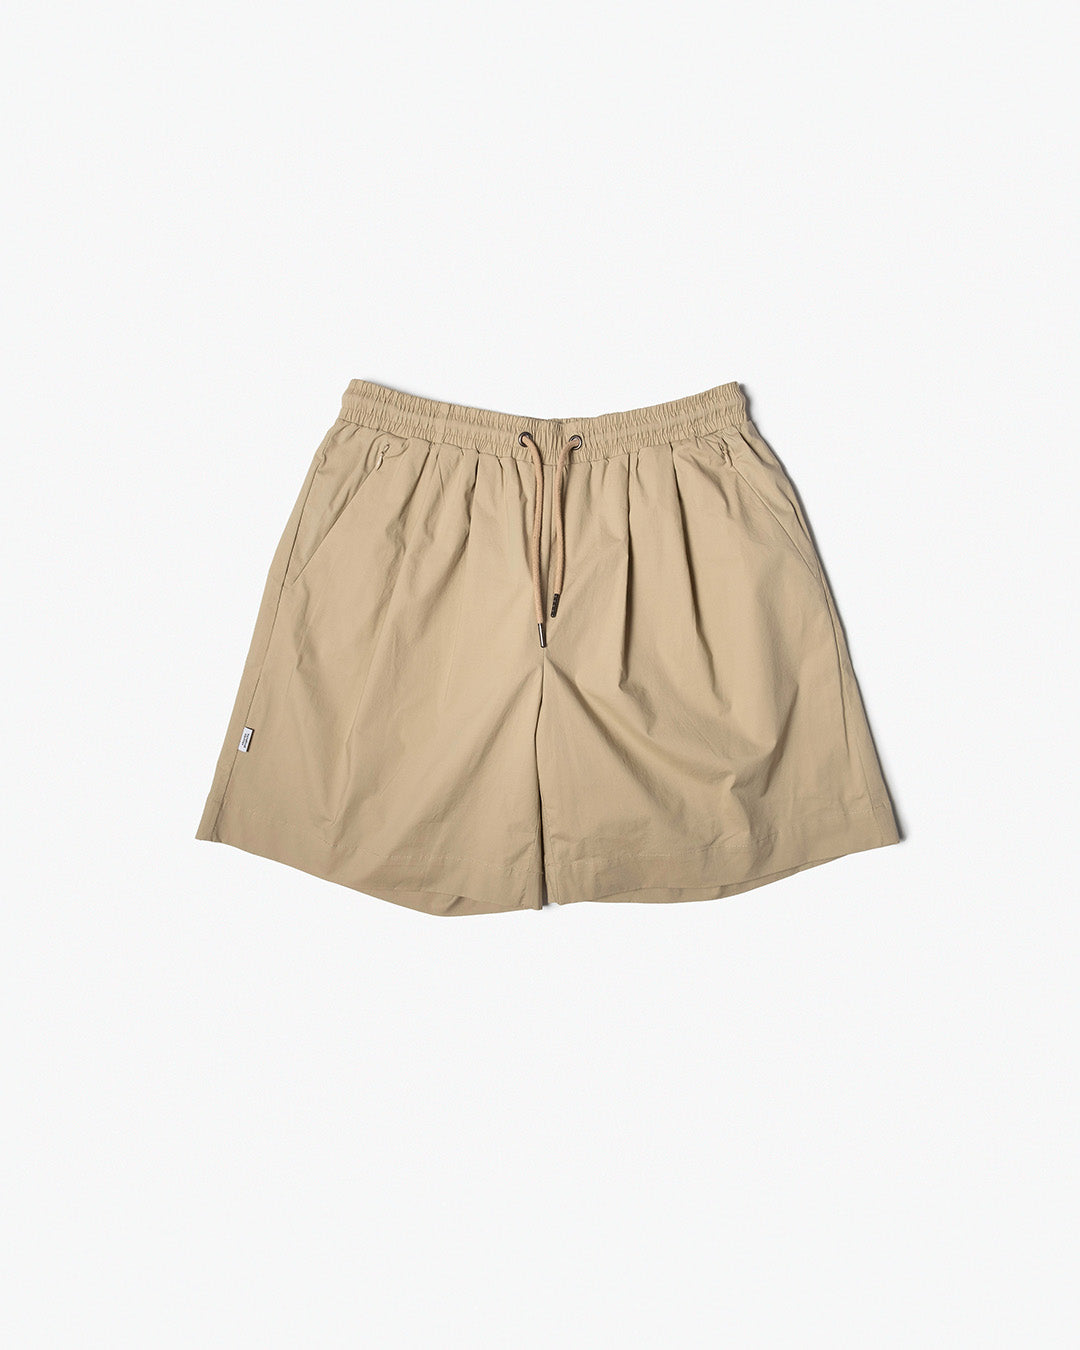 EZ Shorts / Cotton Spandex - Beige